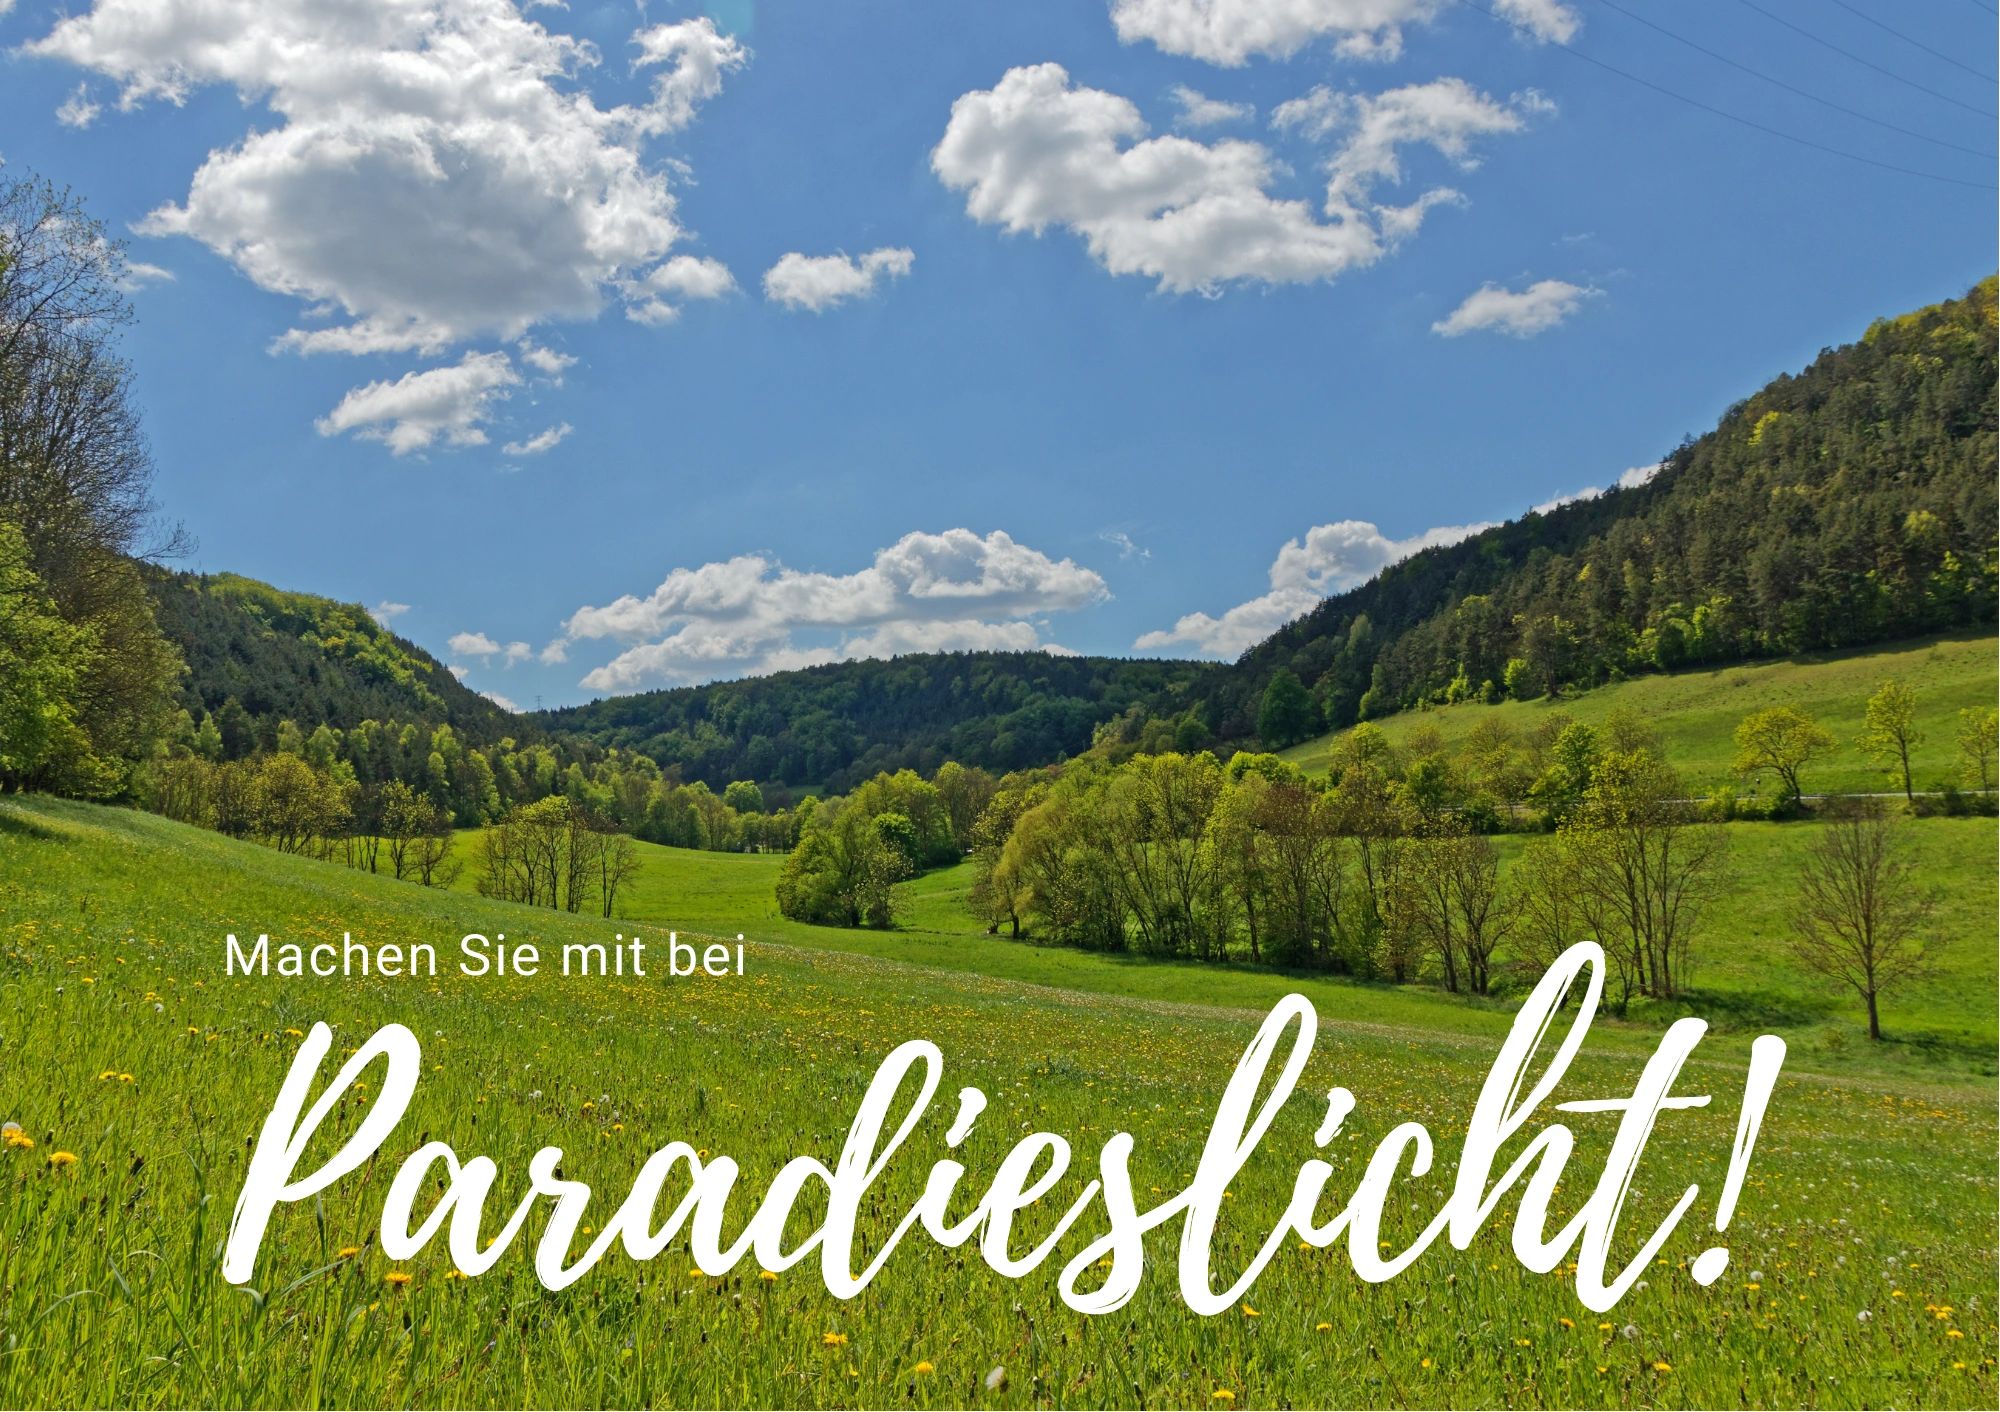 Paradieslicht ist ein kultur-politisches Online-Magazin aus Jena, offen für Gastbeiträge